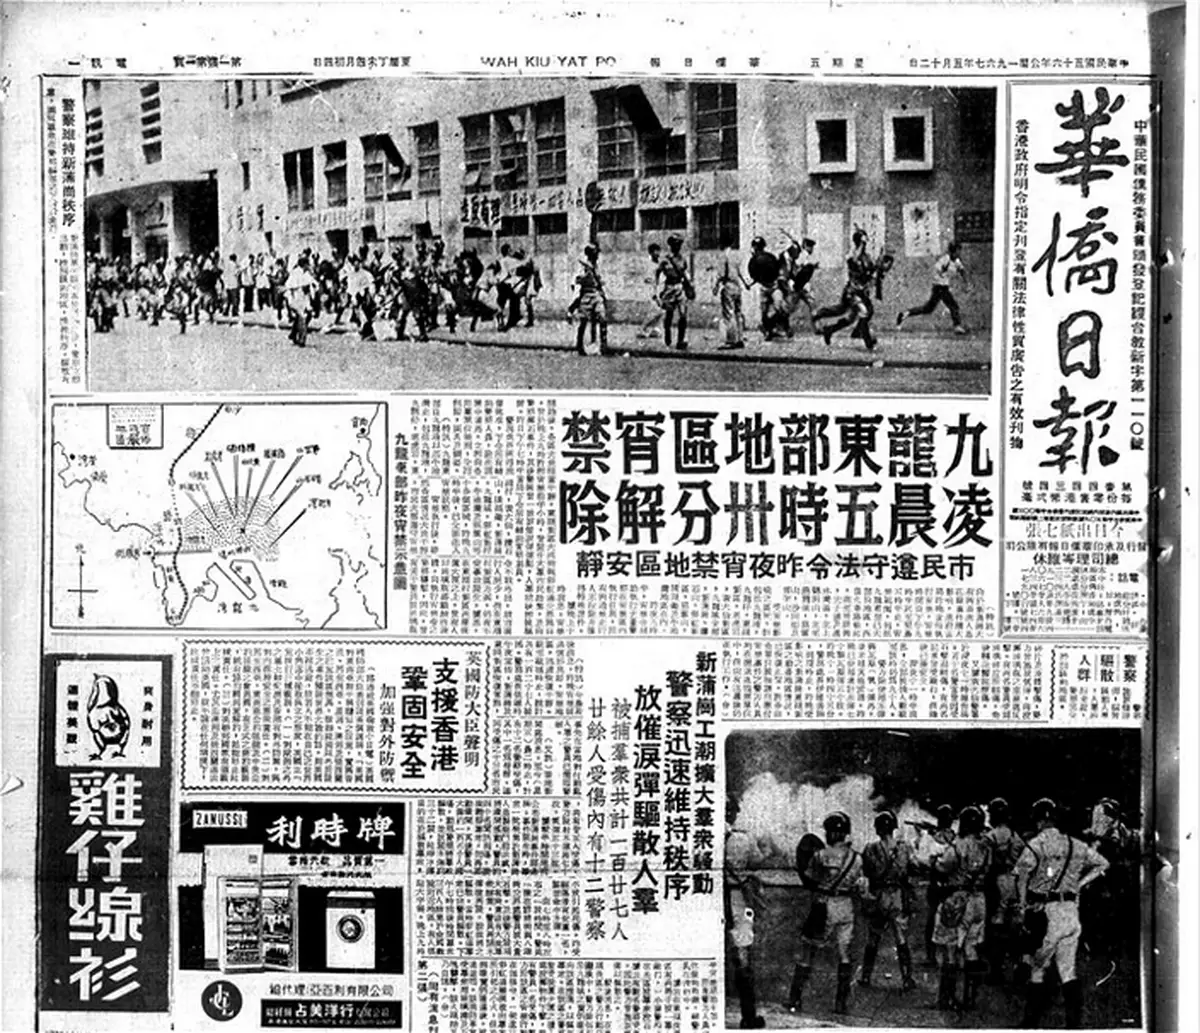 你估歷史上香港報紙最好賣是那一天? 是1967年7月……